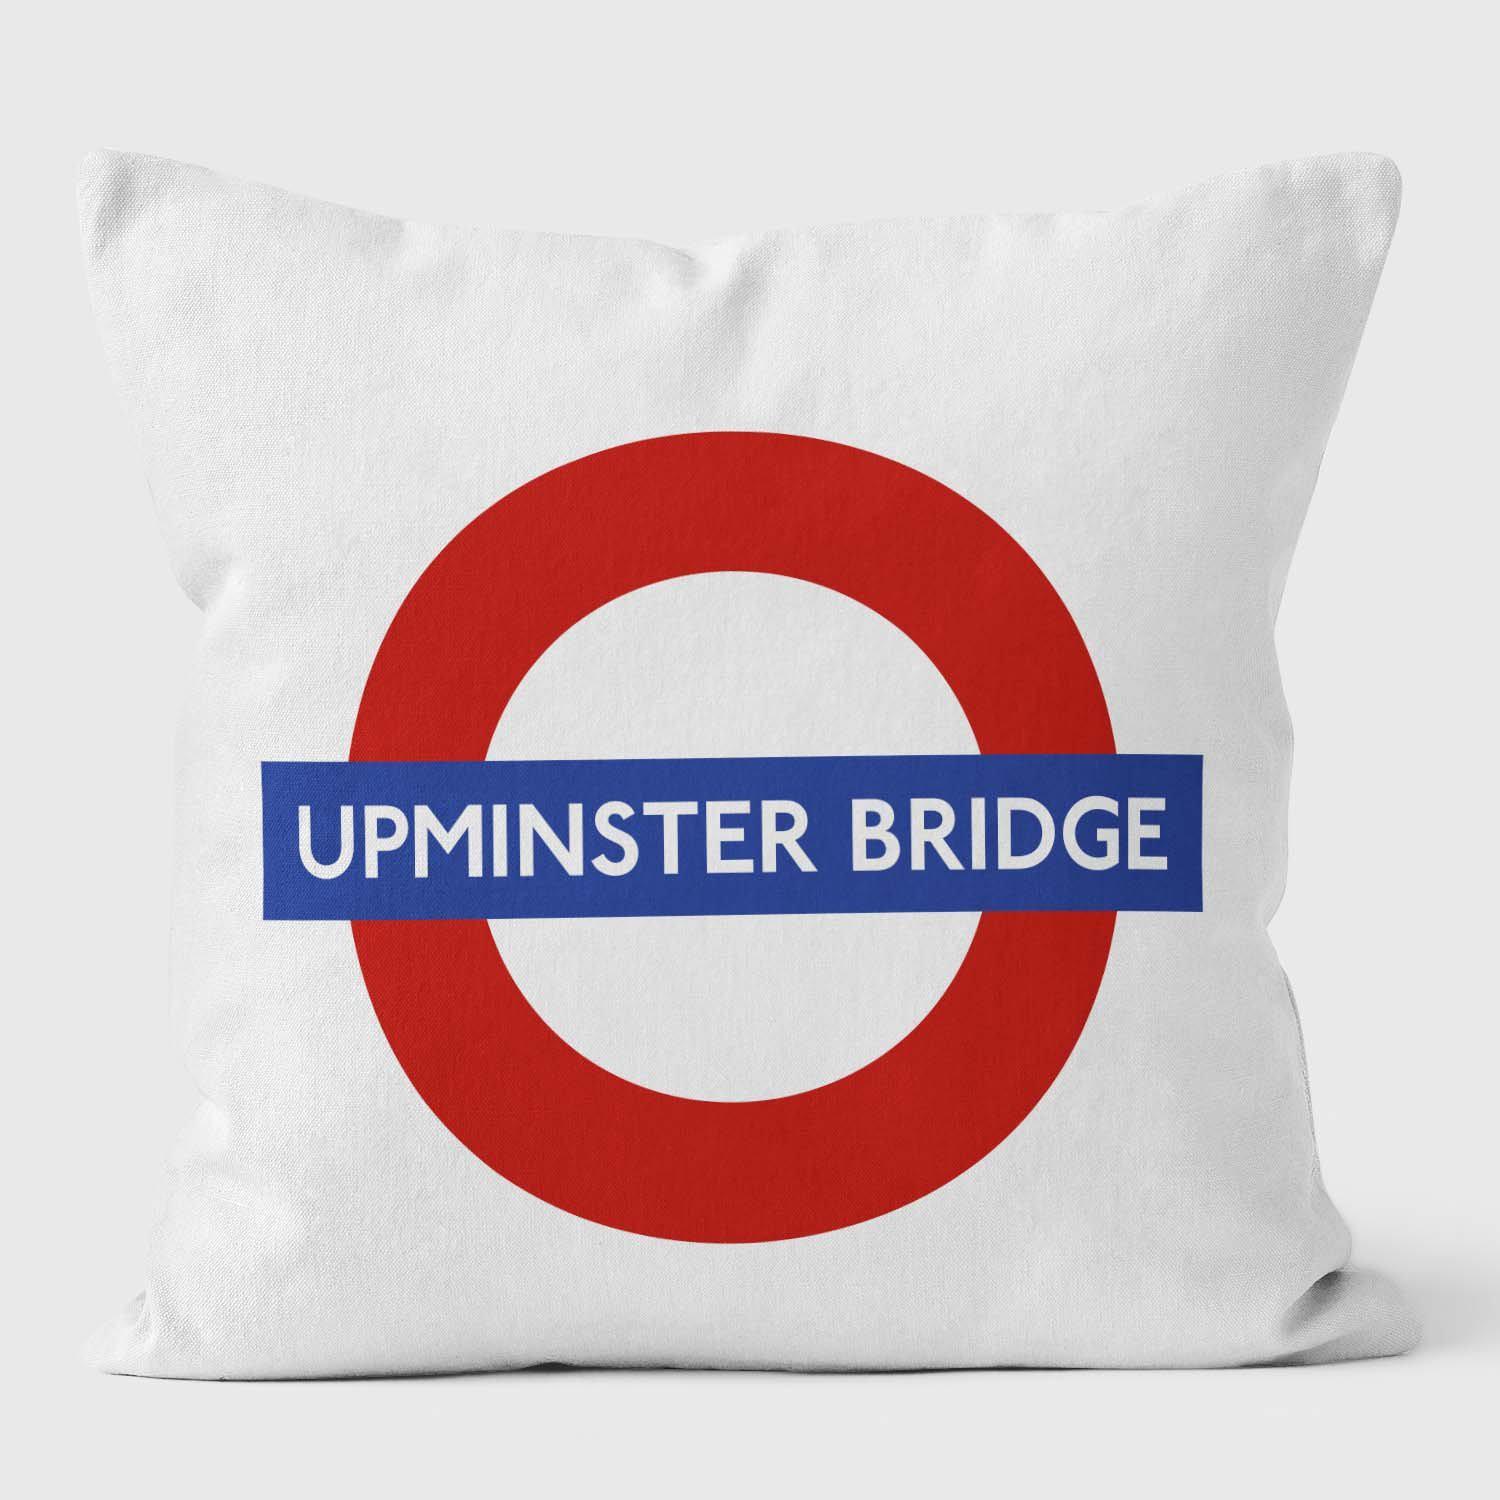 Upminster Bridge London Underground Tube Station Roundel Cushion - Handmade Cushions UK - WeLoveCushions